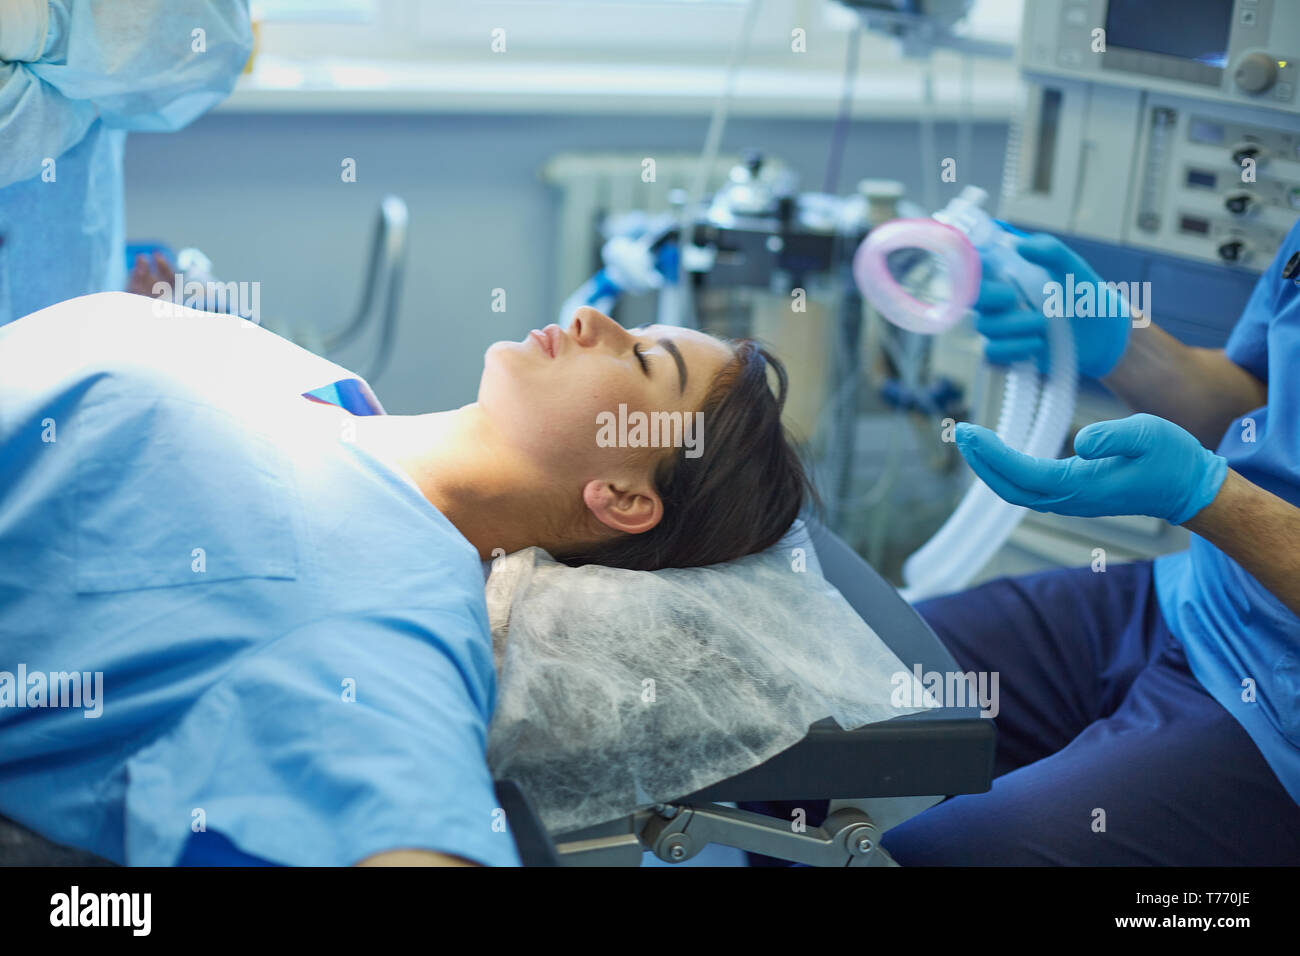 Пациент на операционном столе